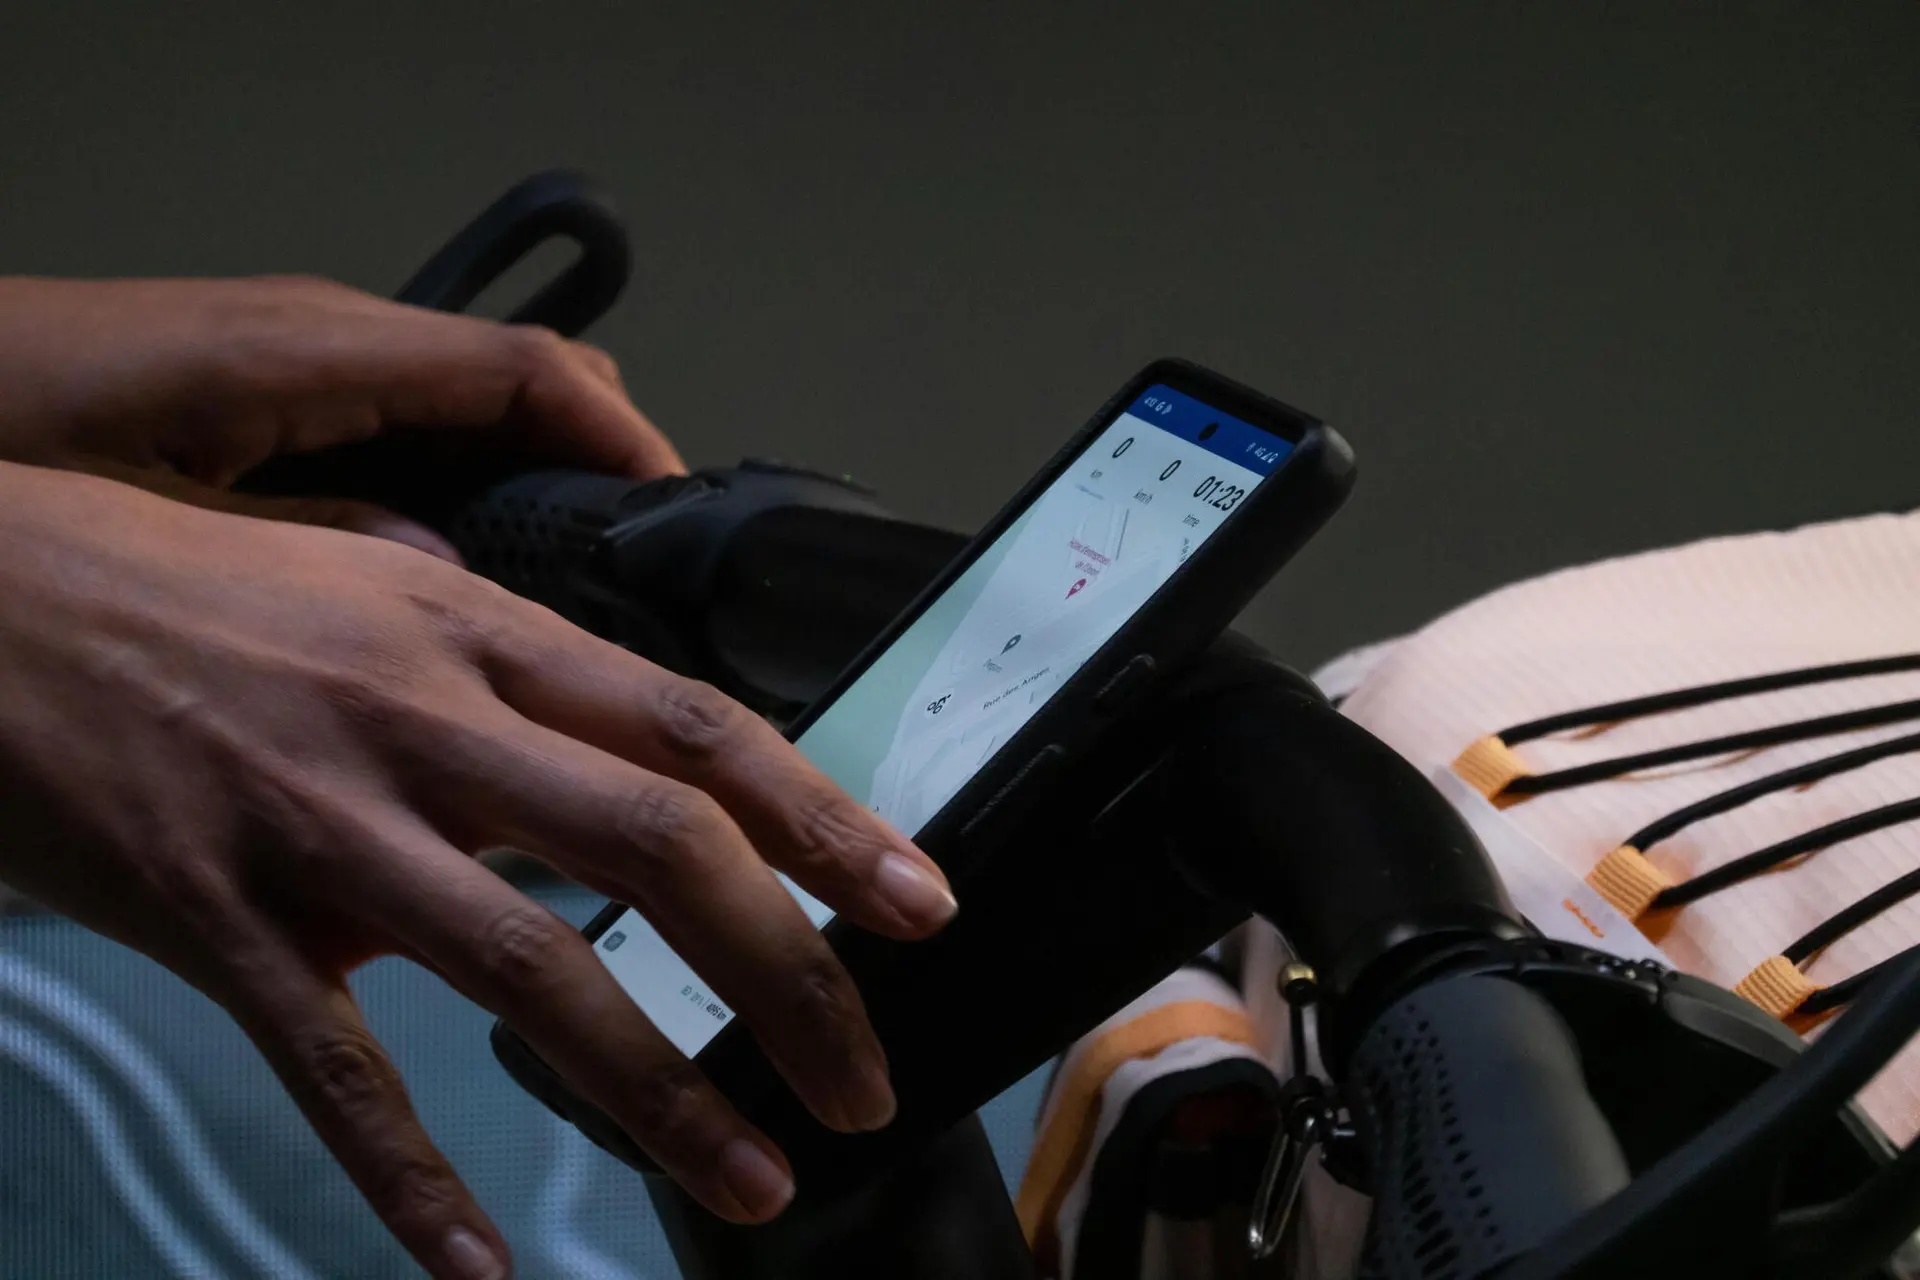 Magic Bike 02使用智慧手機當作車輛的儀表顯示，還有專屬的導航模式可以規劃路線